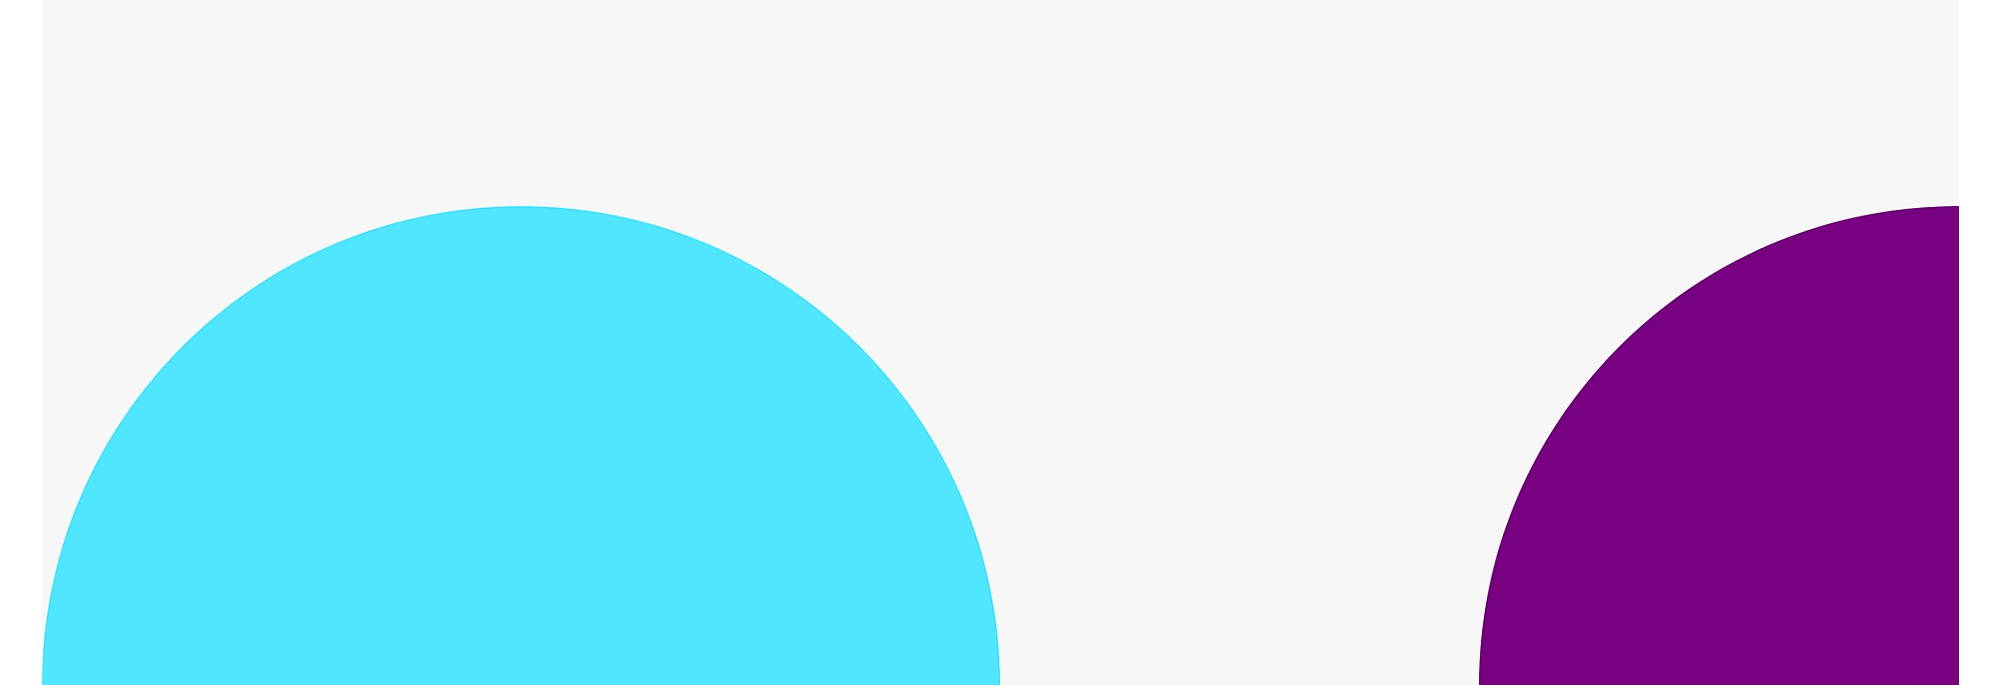 Två stora, delvis överlappande cirklar med en blå cirkel till vänster och en lila cirkel till höger 